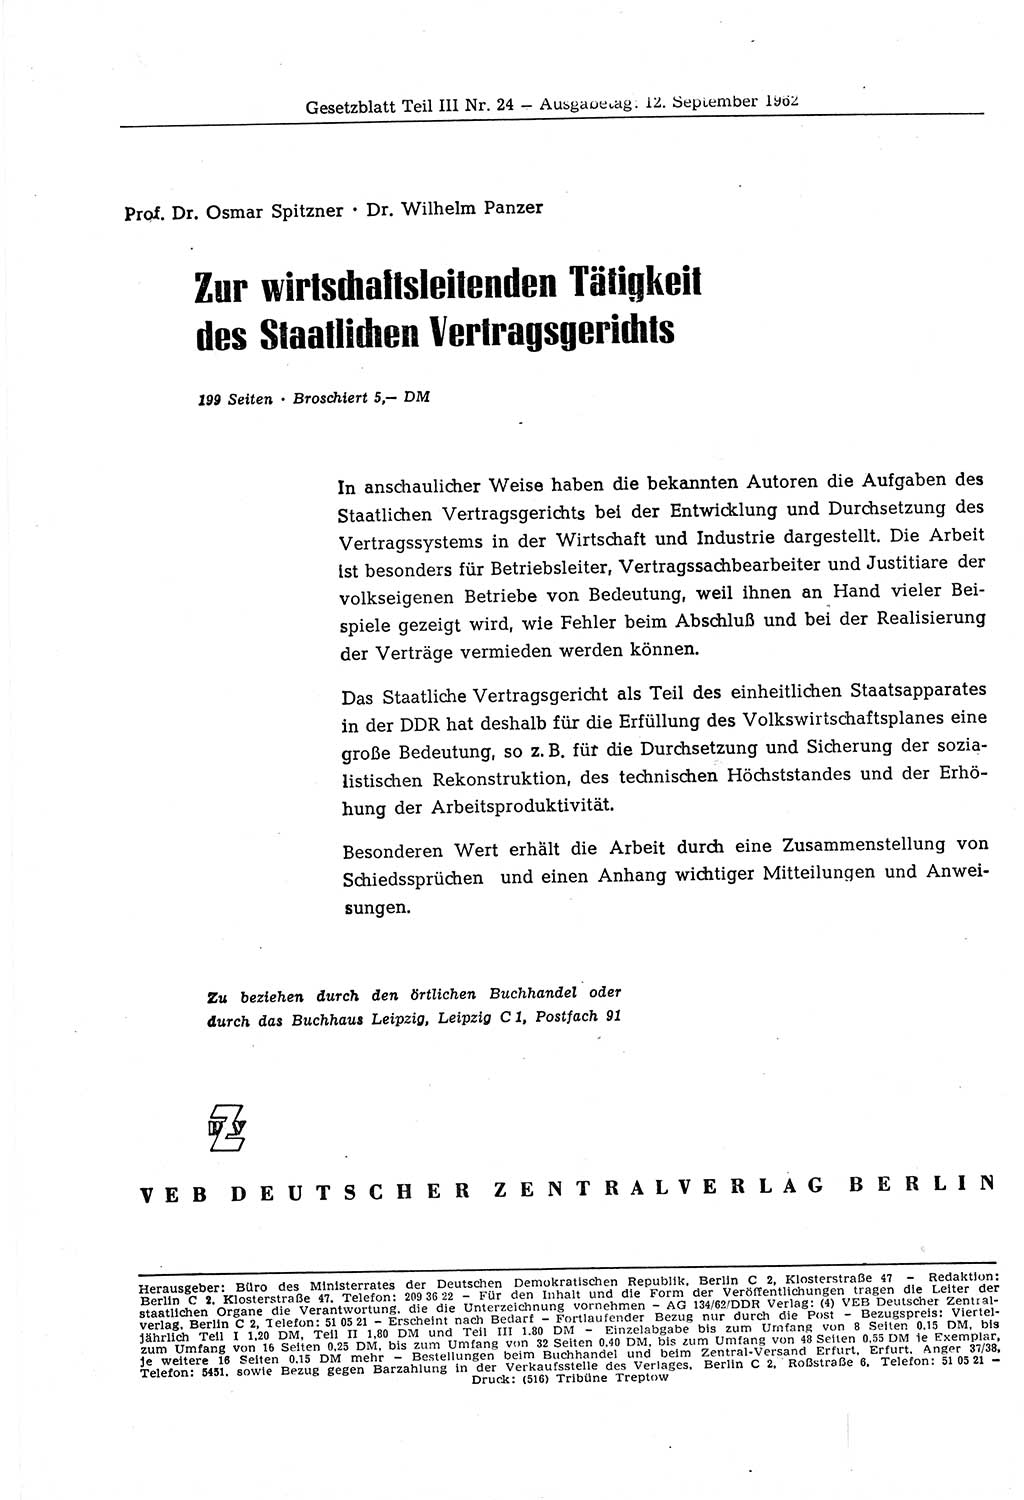 Gesetzblatt (GBl.) der Deutschen Demokratischen Republik (DDR) Teil ⅠⅠⅠ 1962, Seite 264 (GBl. DDR ⅠⅠⅠ 1962, S. 264)